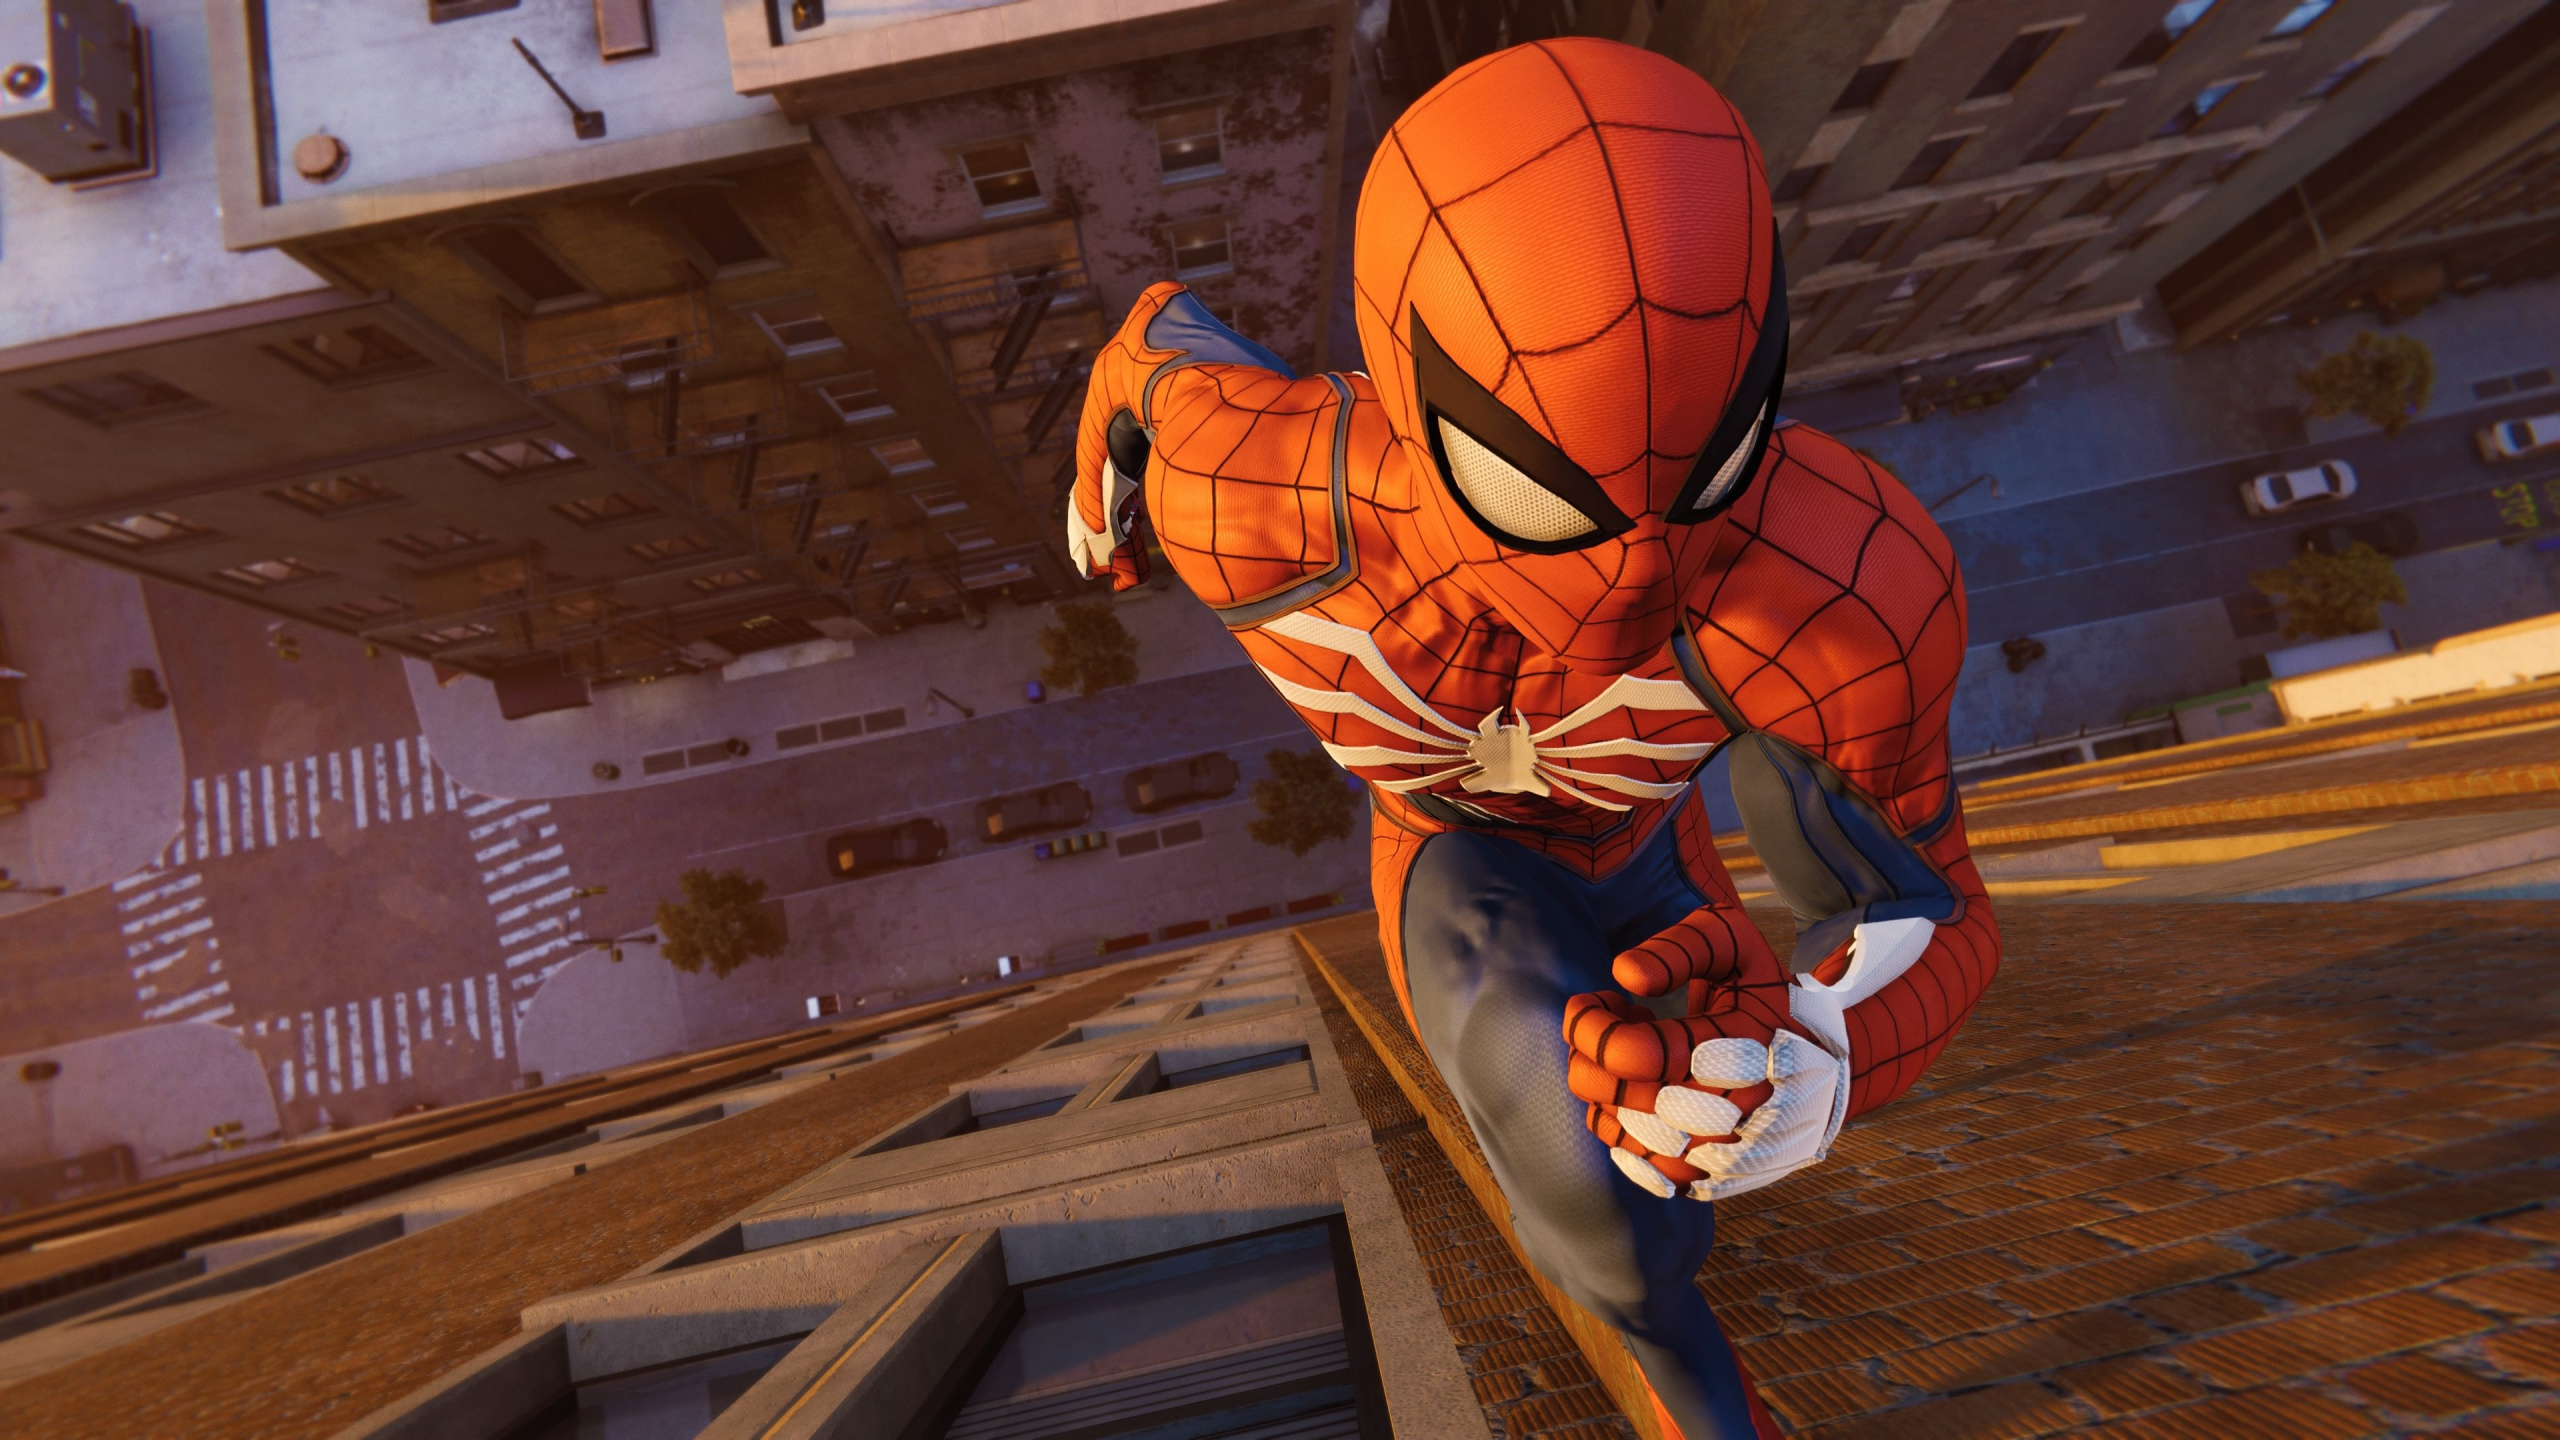 Spider-man, Vengadores Maravillas, Insomniac Games, Superhéroe, Mundo Abierto. Wallpaper in 2560x1440 Resolution